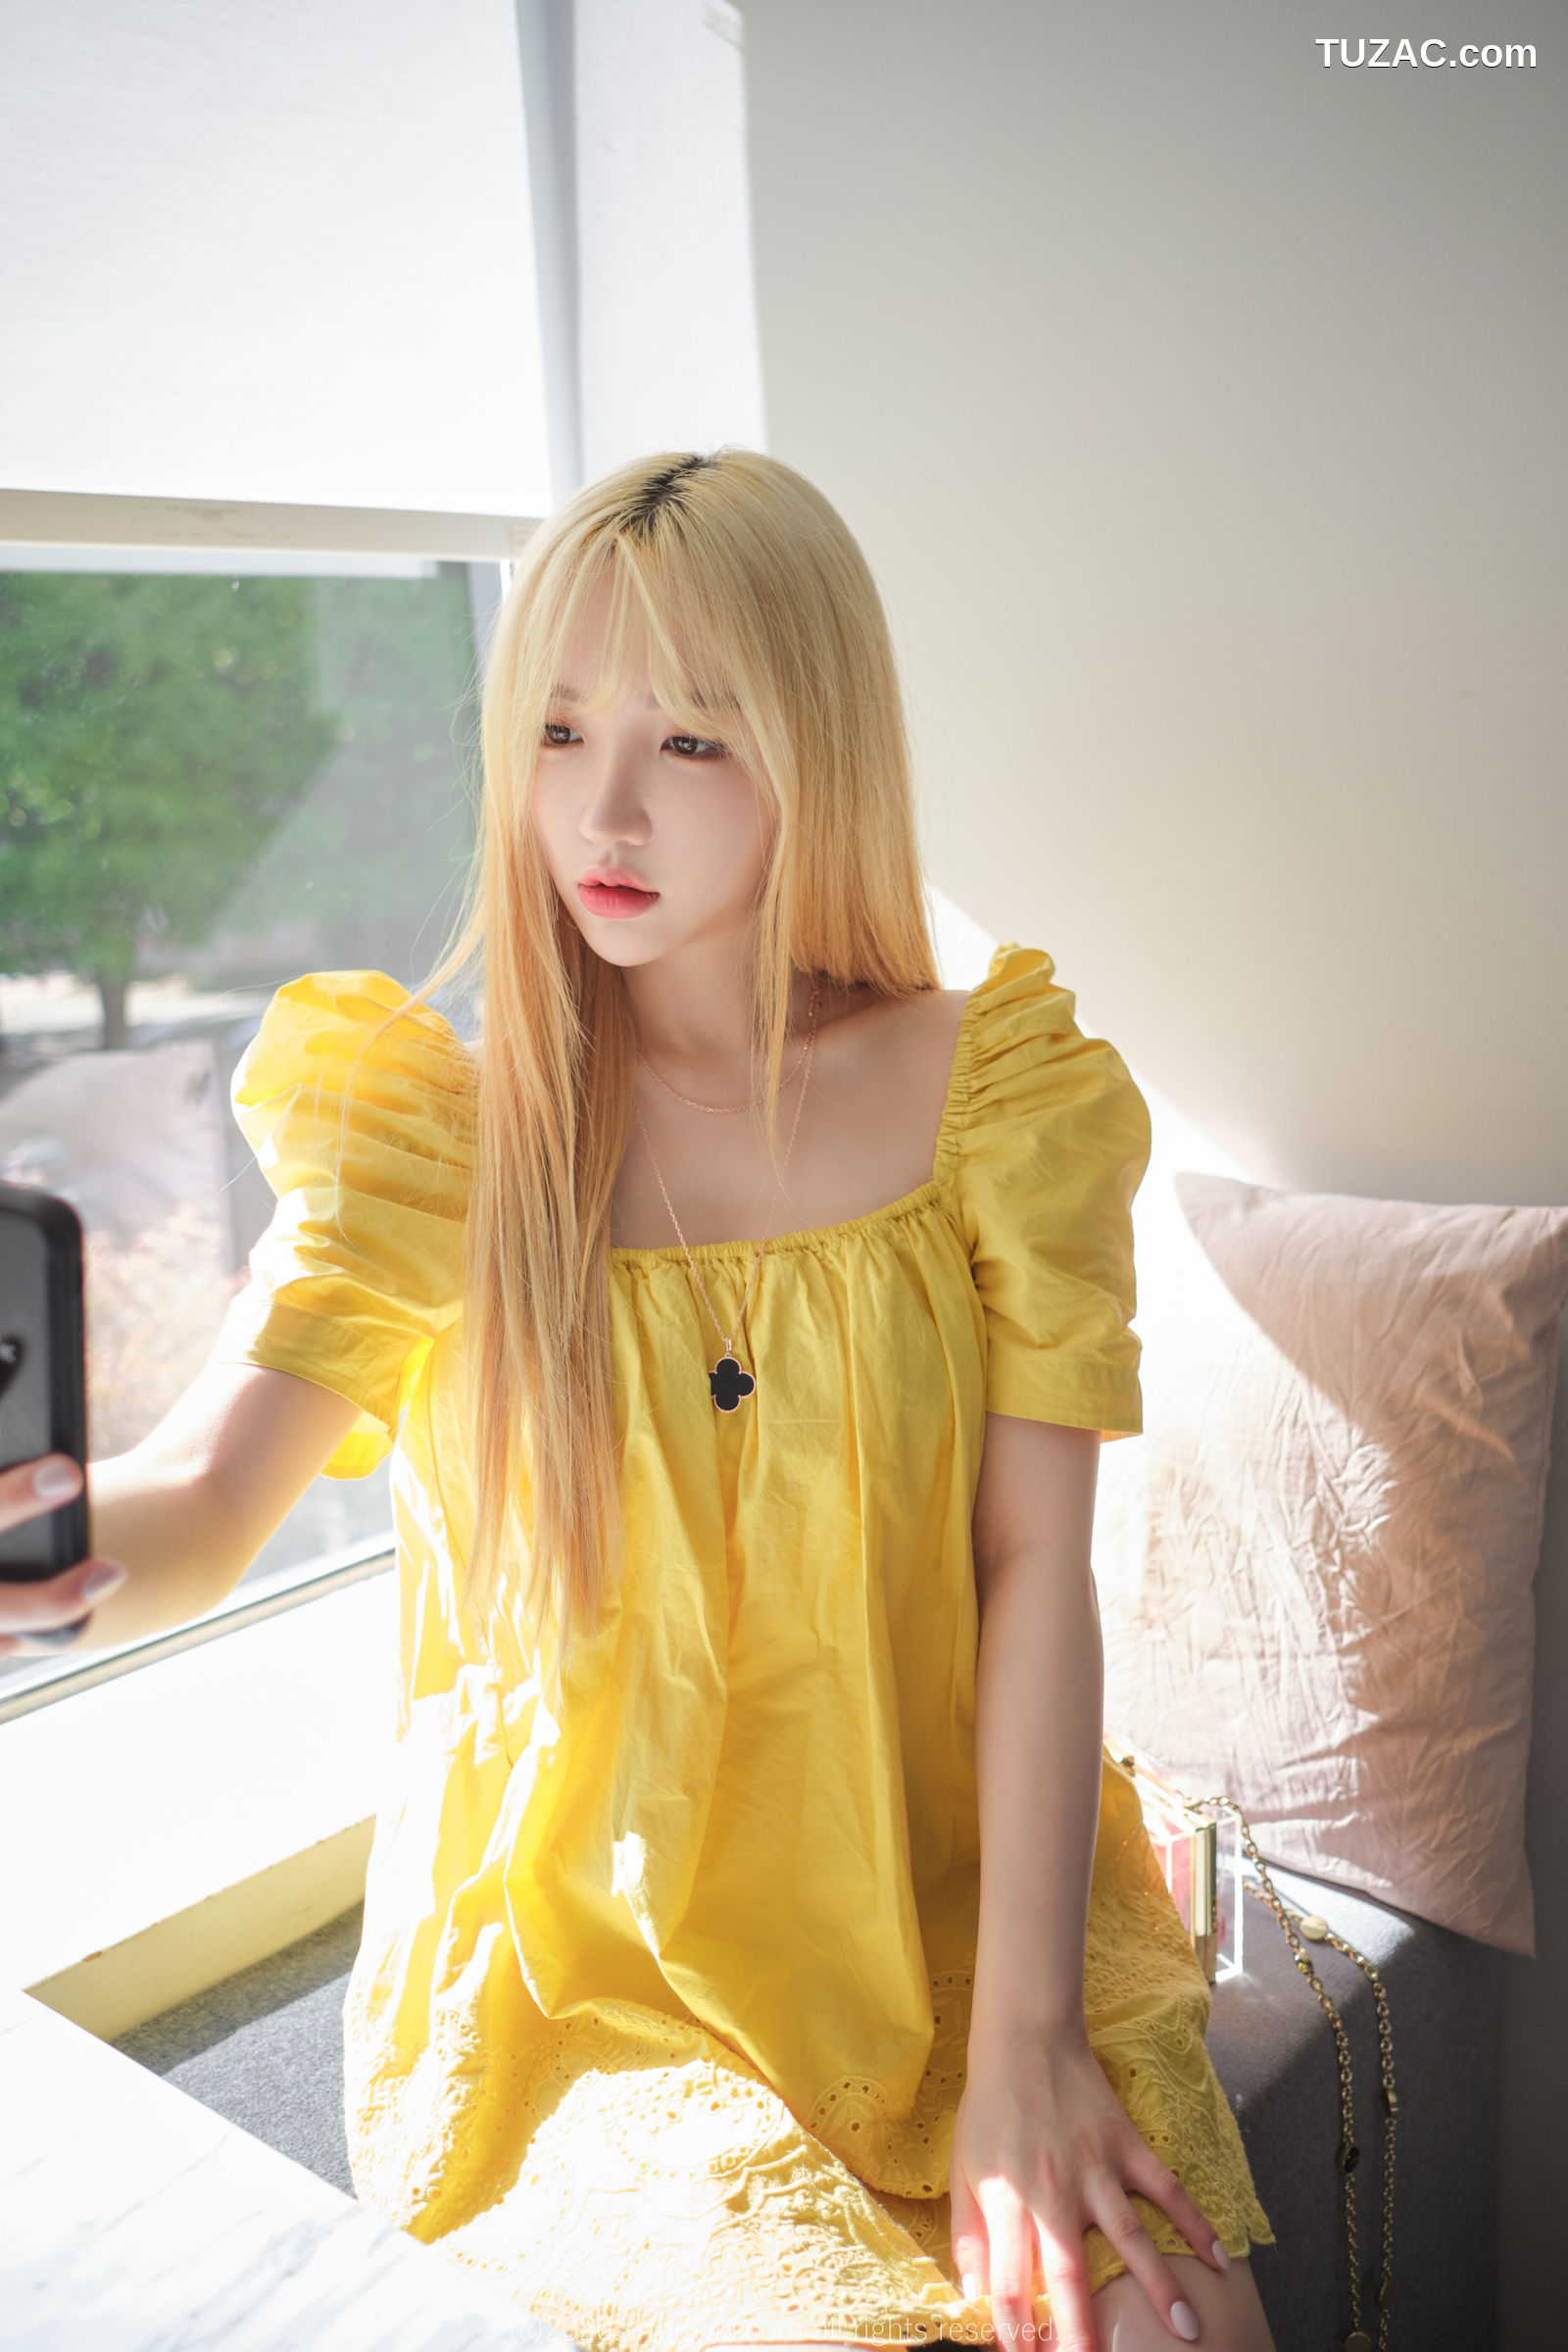 孙乐乐-Son-YeEun-ArtGravia-173-黄色纱裙黑内